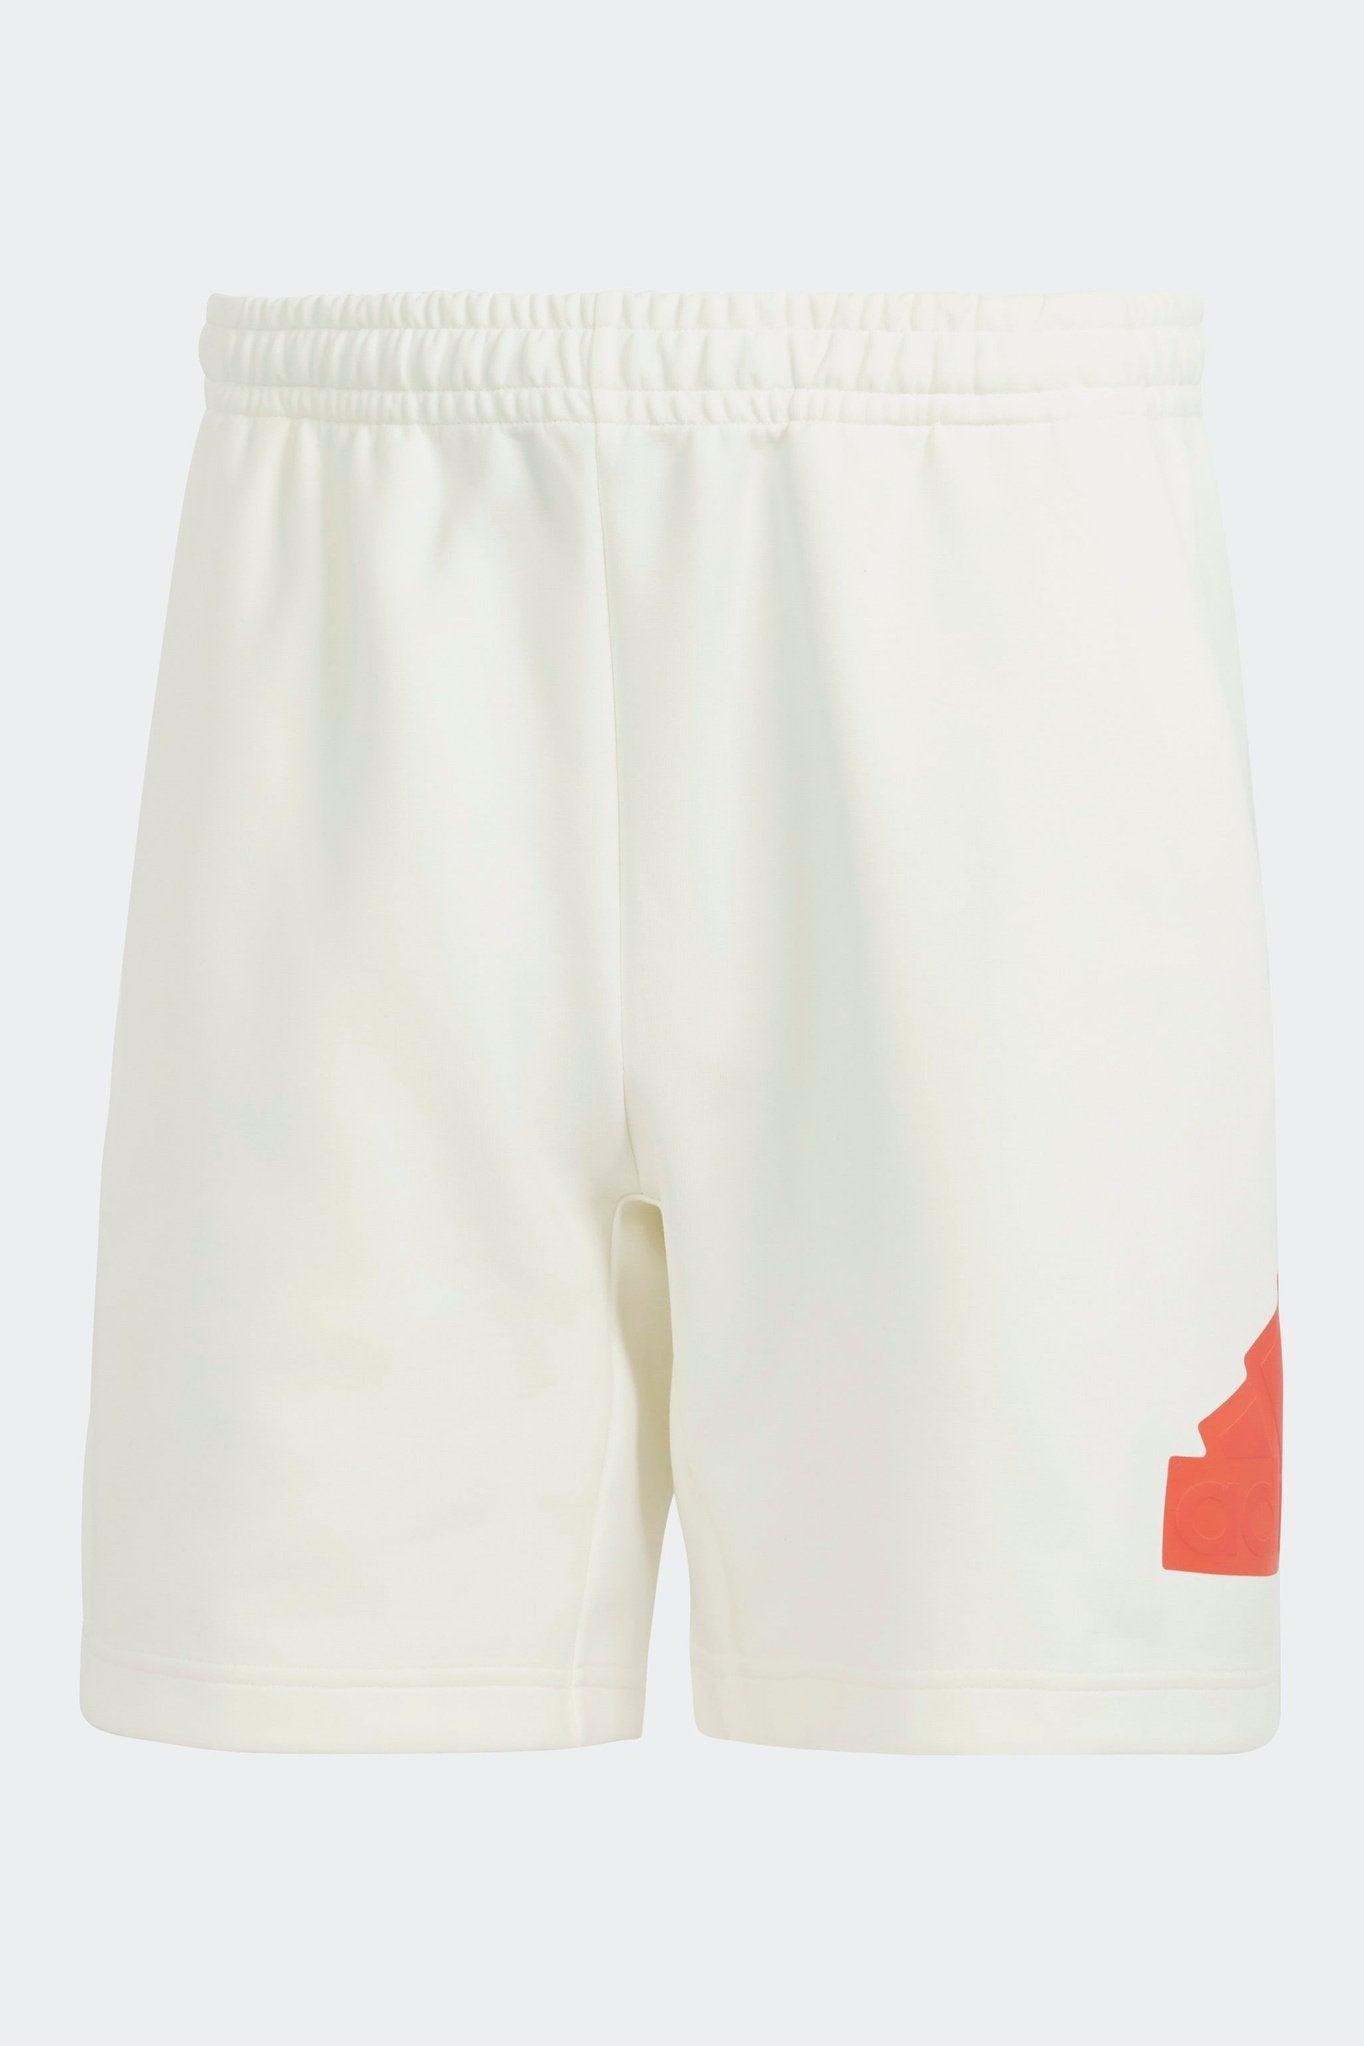 מכנסיים קצרים לגברים FUTURE ICONS BADGE  בצבע לבן ואדום